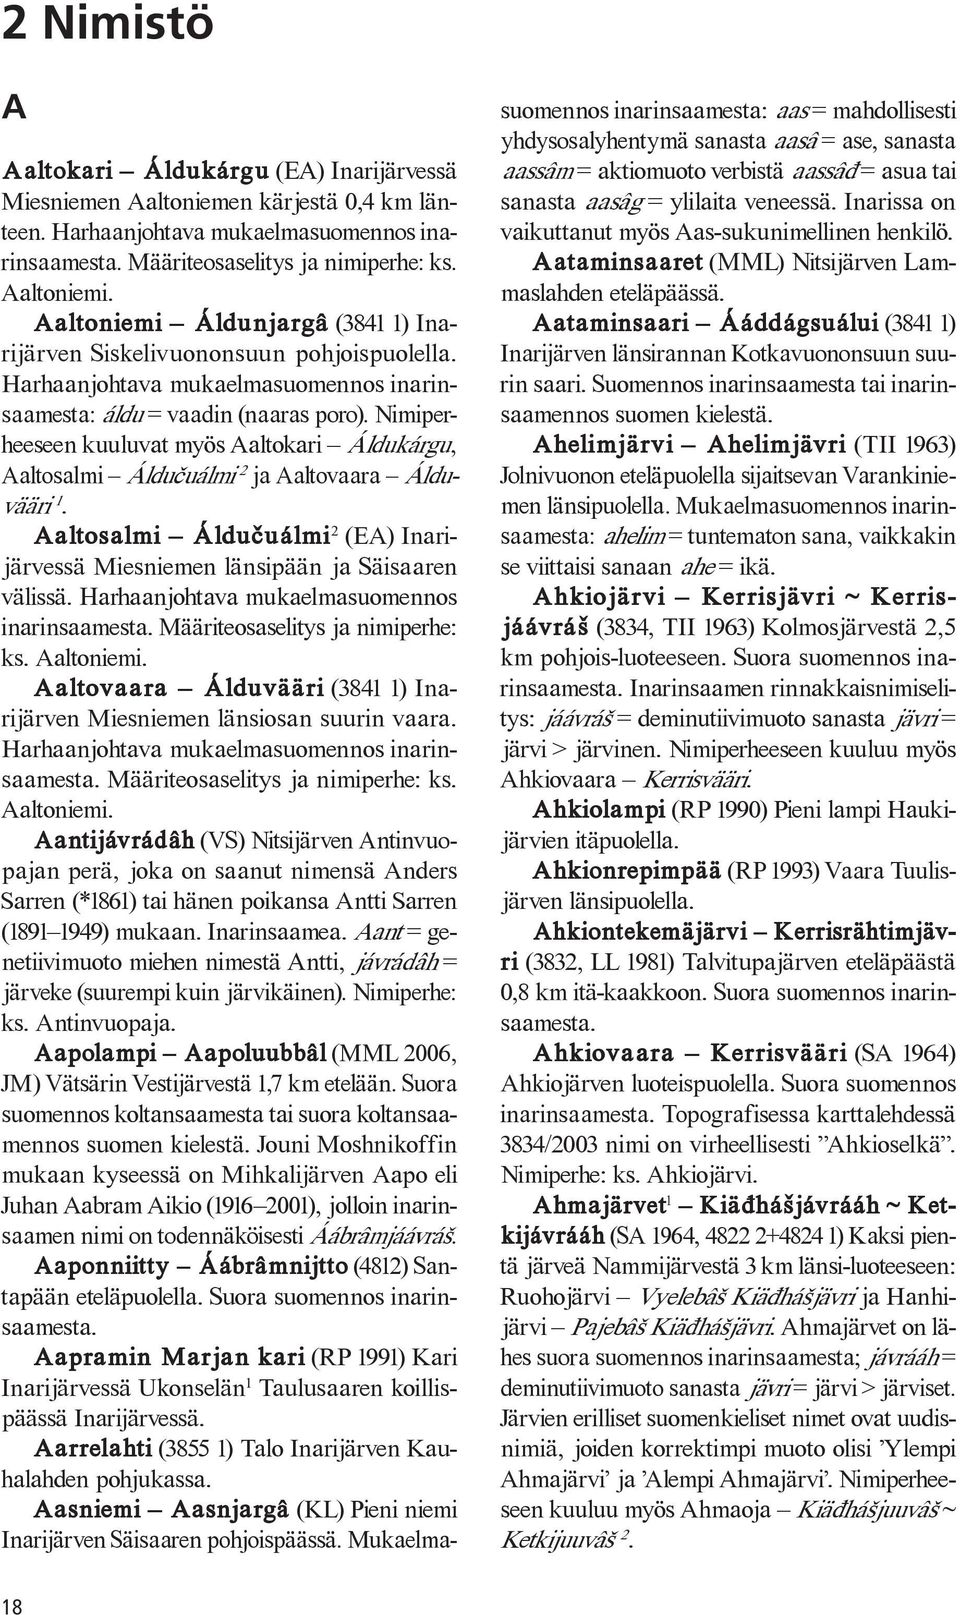 Nimiperheeseen kuuluvat myös Aaltokari Áldukárgu, Aaltosalmi Áldu uálmi 2 ja Aaltovaara Álduvääri 1. Aaltosalmi Áldu uálmi 2 (EA) Inarijärvessä Miesniemen länsipään ja Säisaaren välissä.